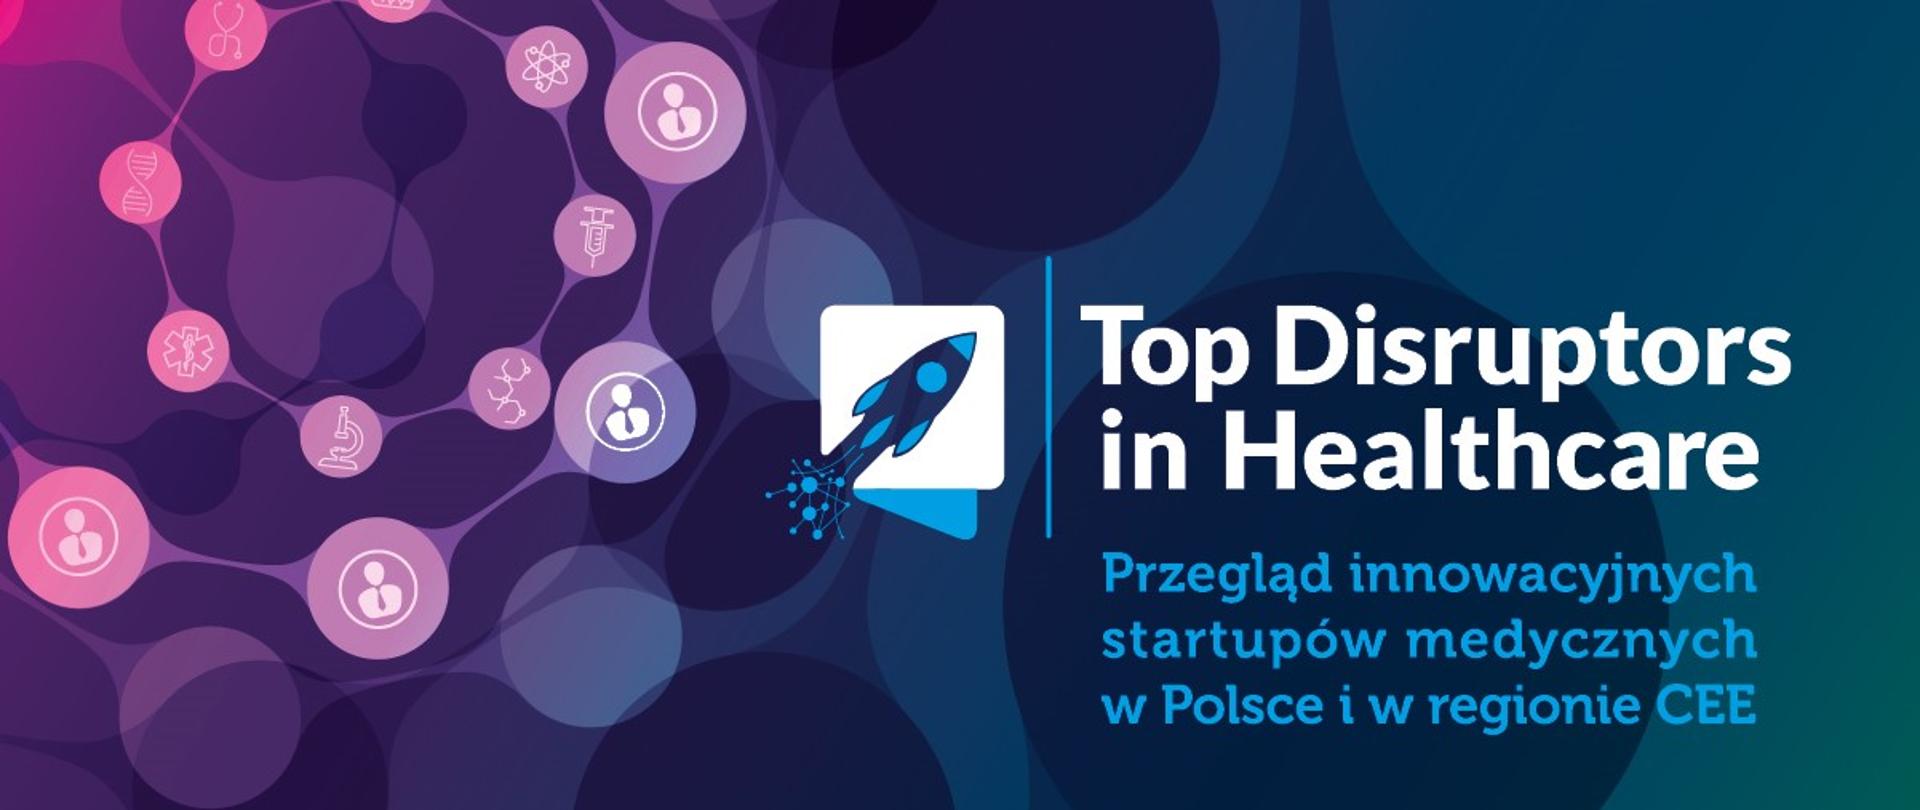 Top Distruptors in Healthcare - Przegląd innowacyjnych startupów medycznych w Polsce i w regionie CEE